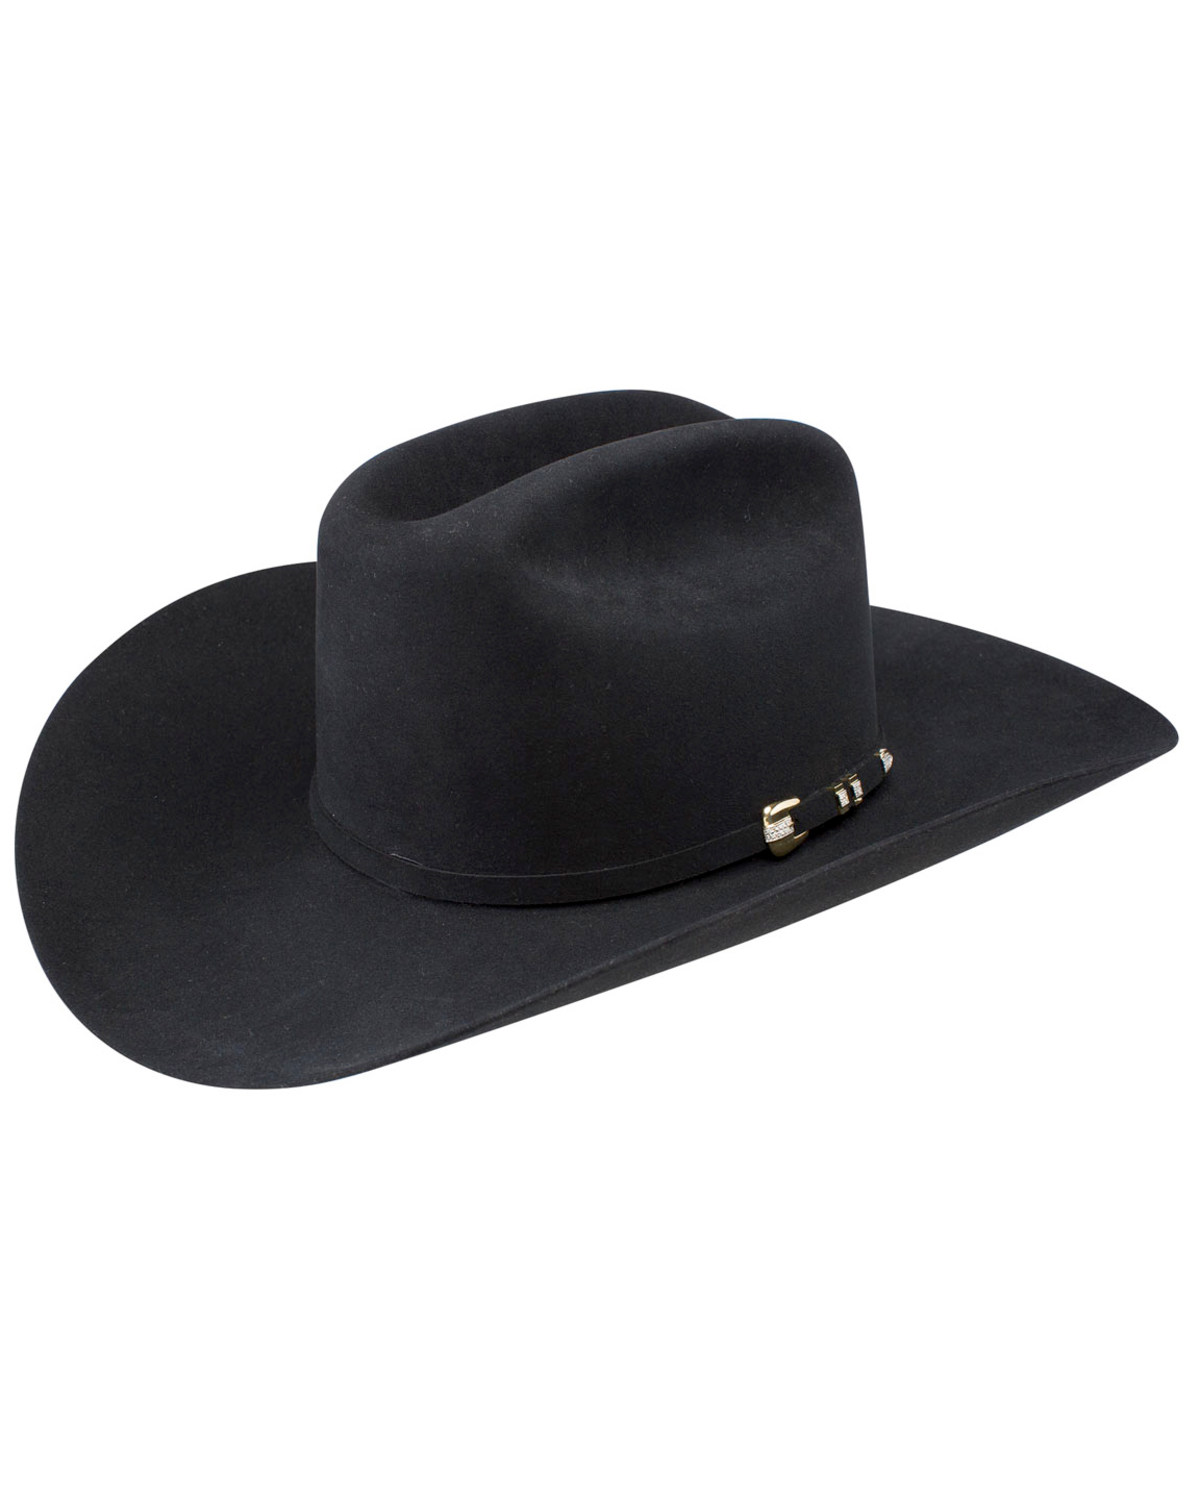 Стетсон. Шляпа Стетсон черная. Платиновые шляпы. Стой ковбой шляпа. Популярная шляпа